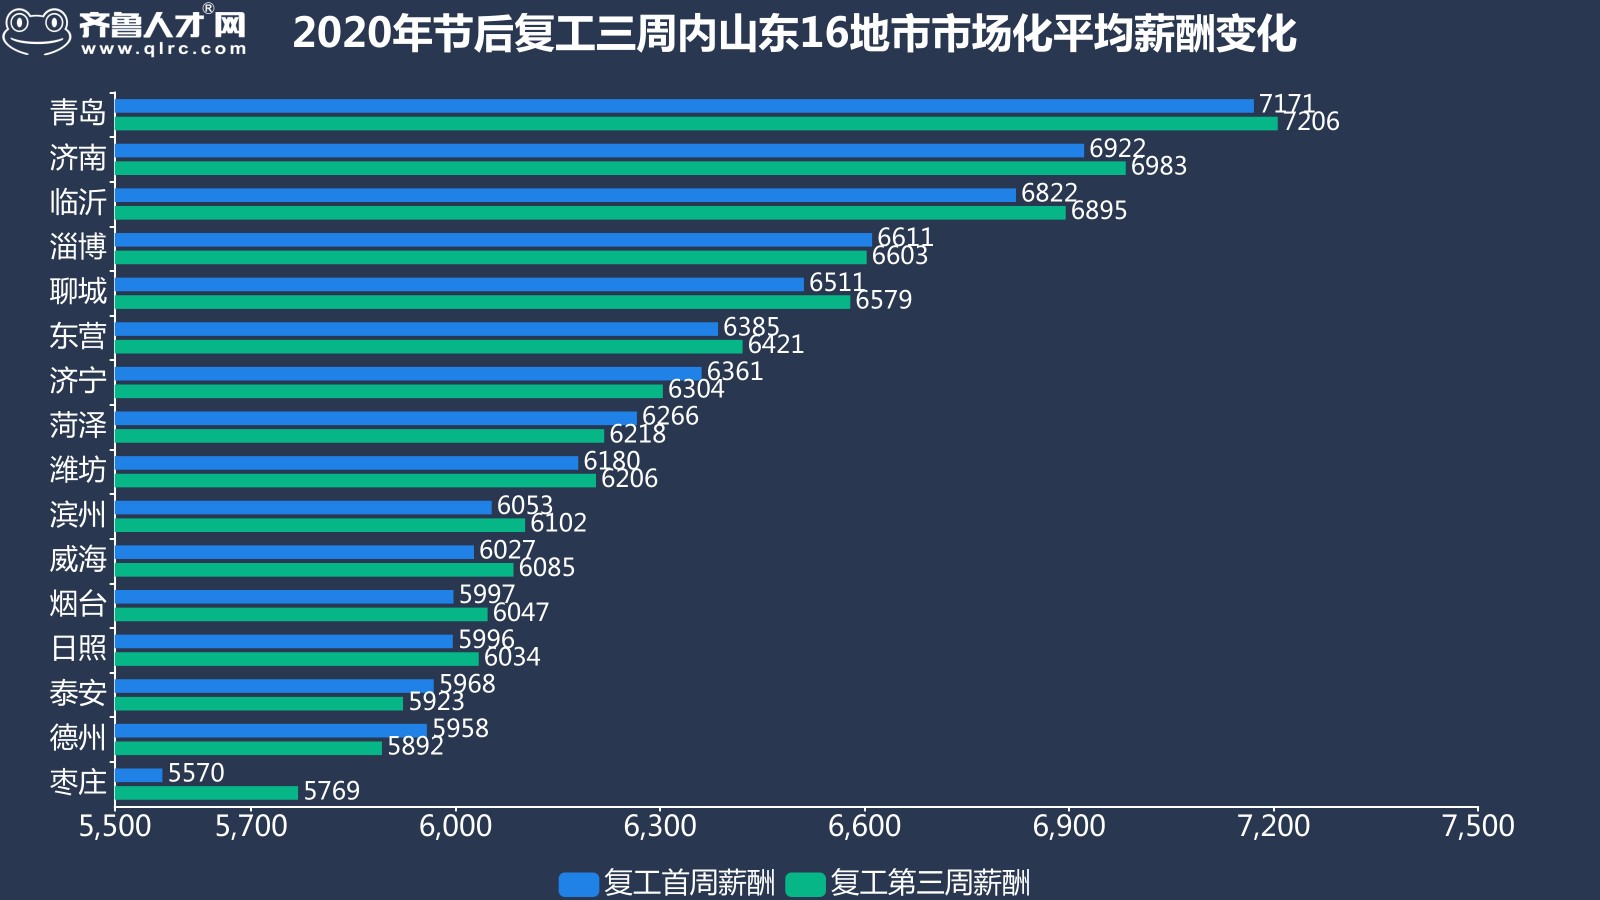 齊魯人才網-2020節后復工第三周山東就業市場數據圖4.jpg